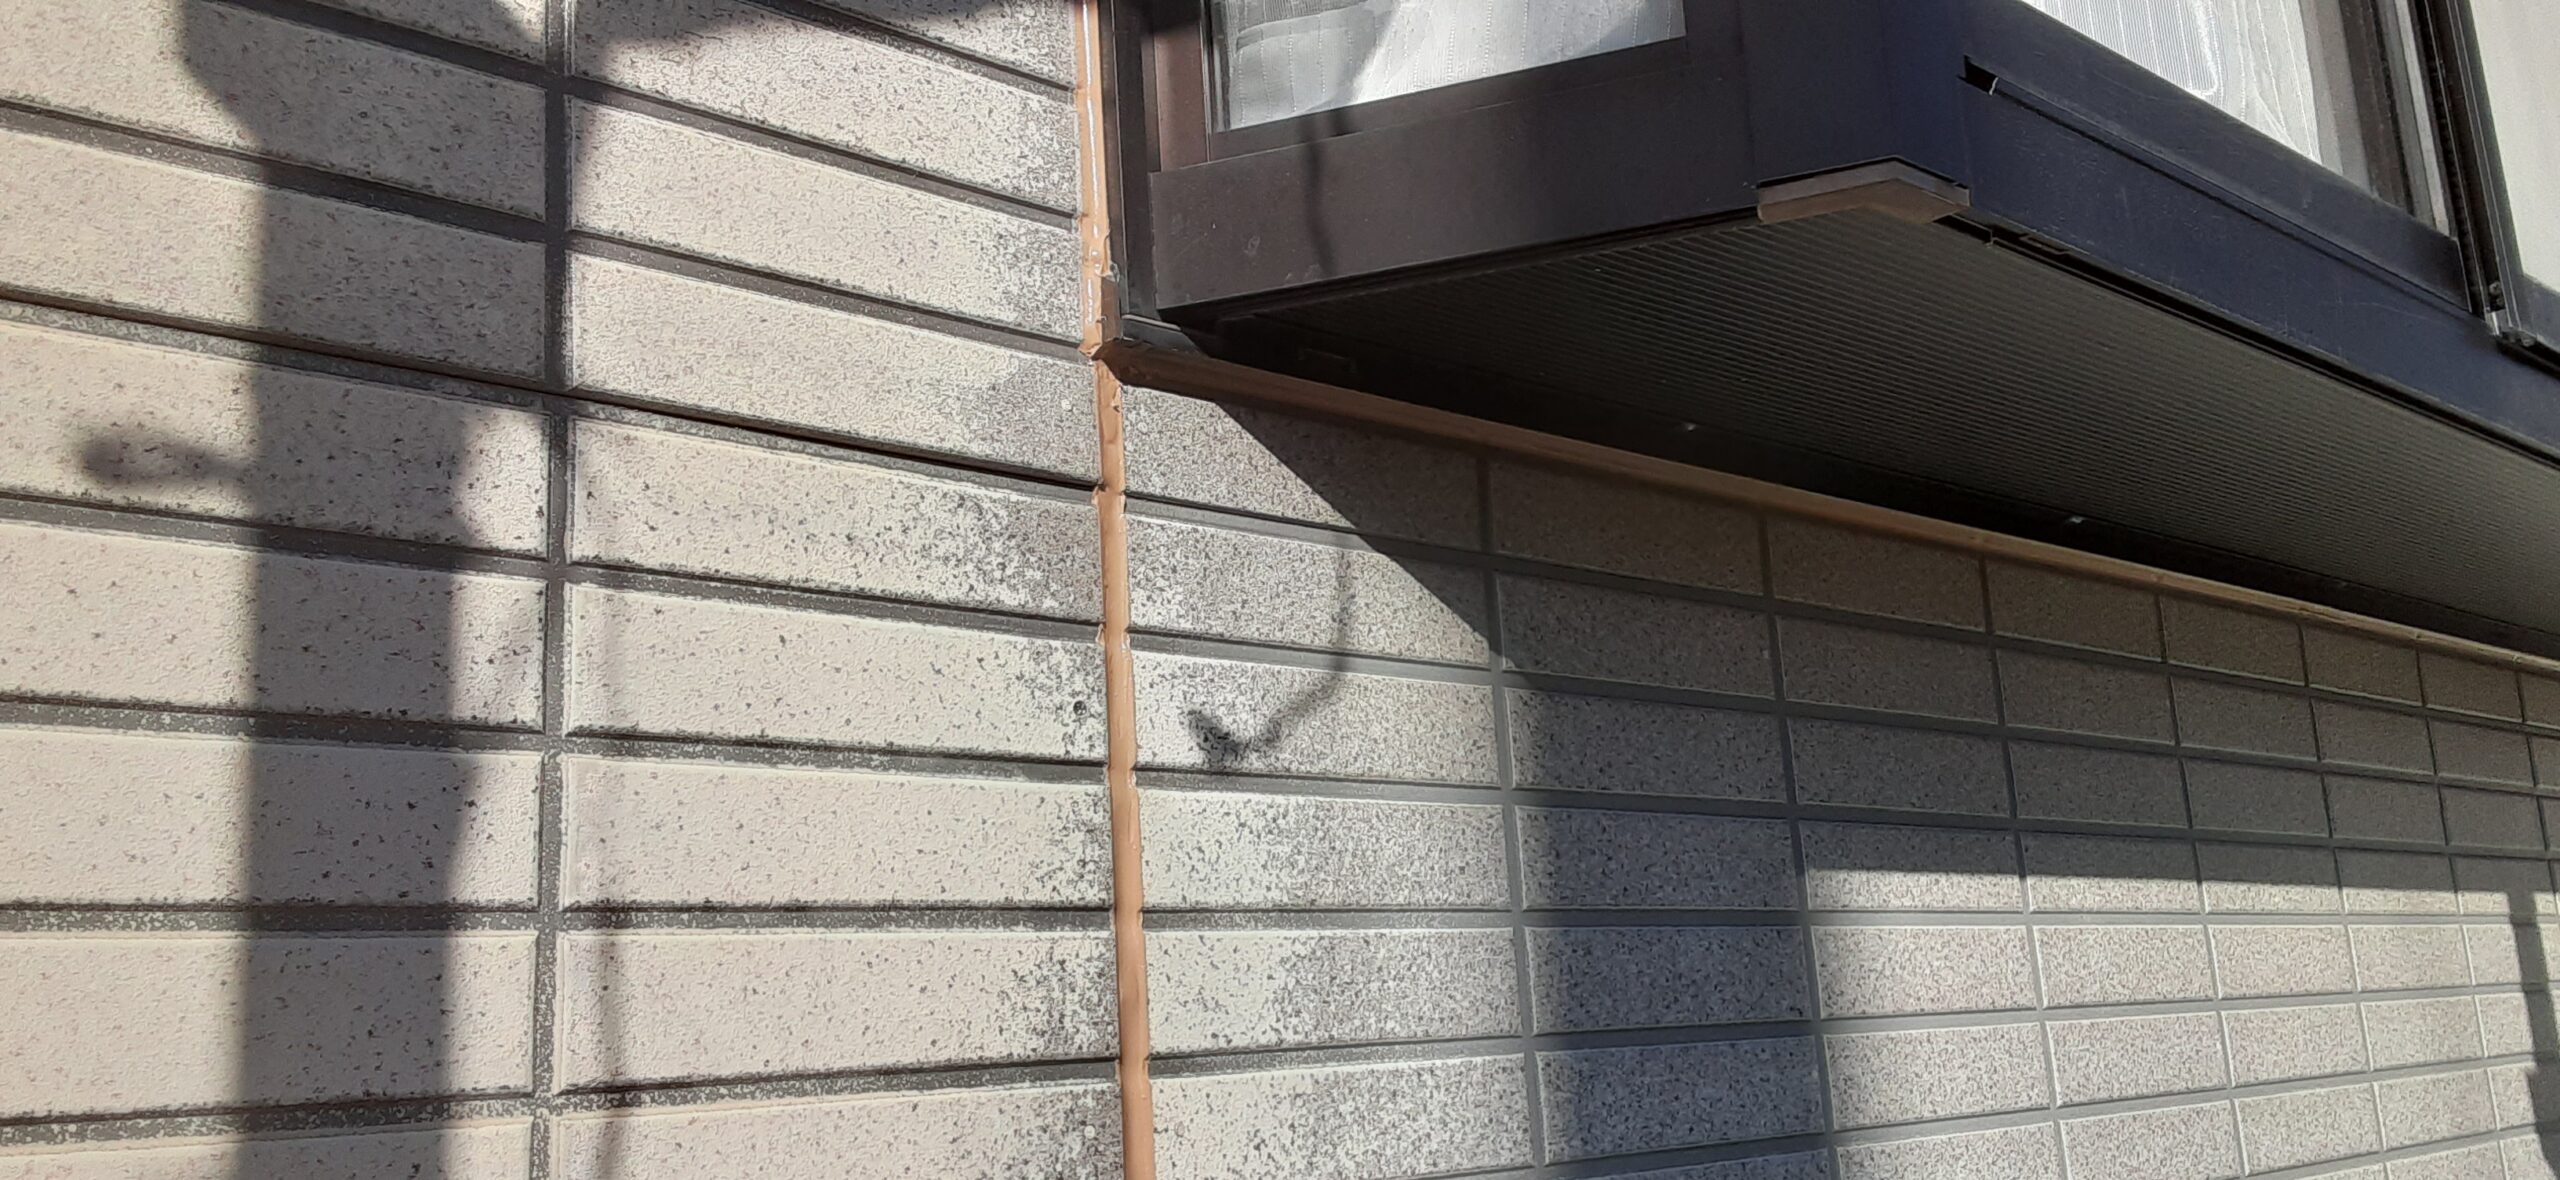 埼玉県さいたま市　外壁コーキング打ち替え、養生、屋根の下塗り塗装/さいたま市岩槻区の(木造2階建て)M様邸にて塗り替えリホーム中